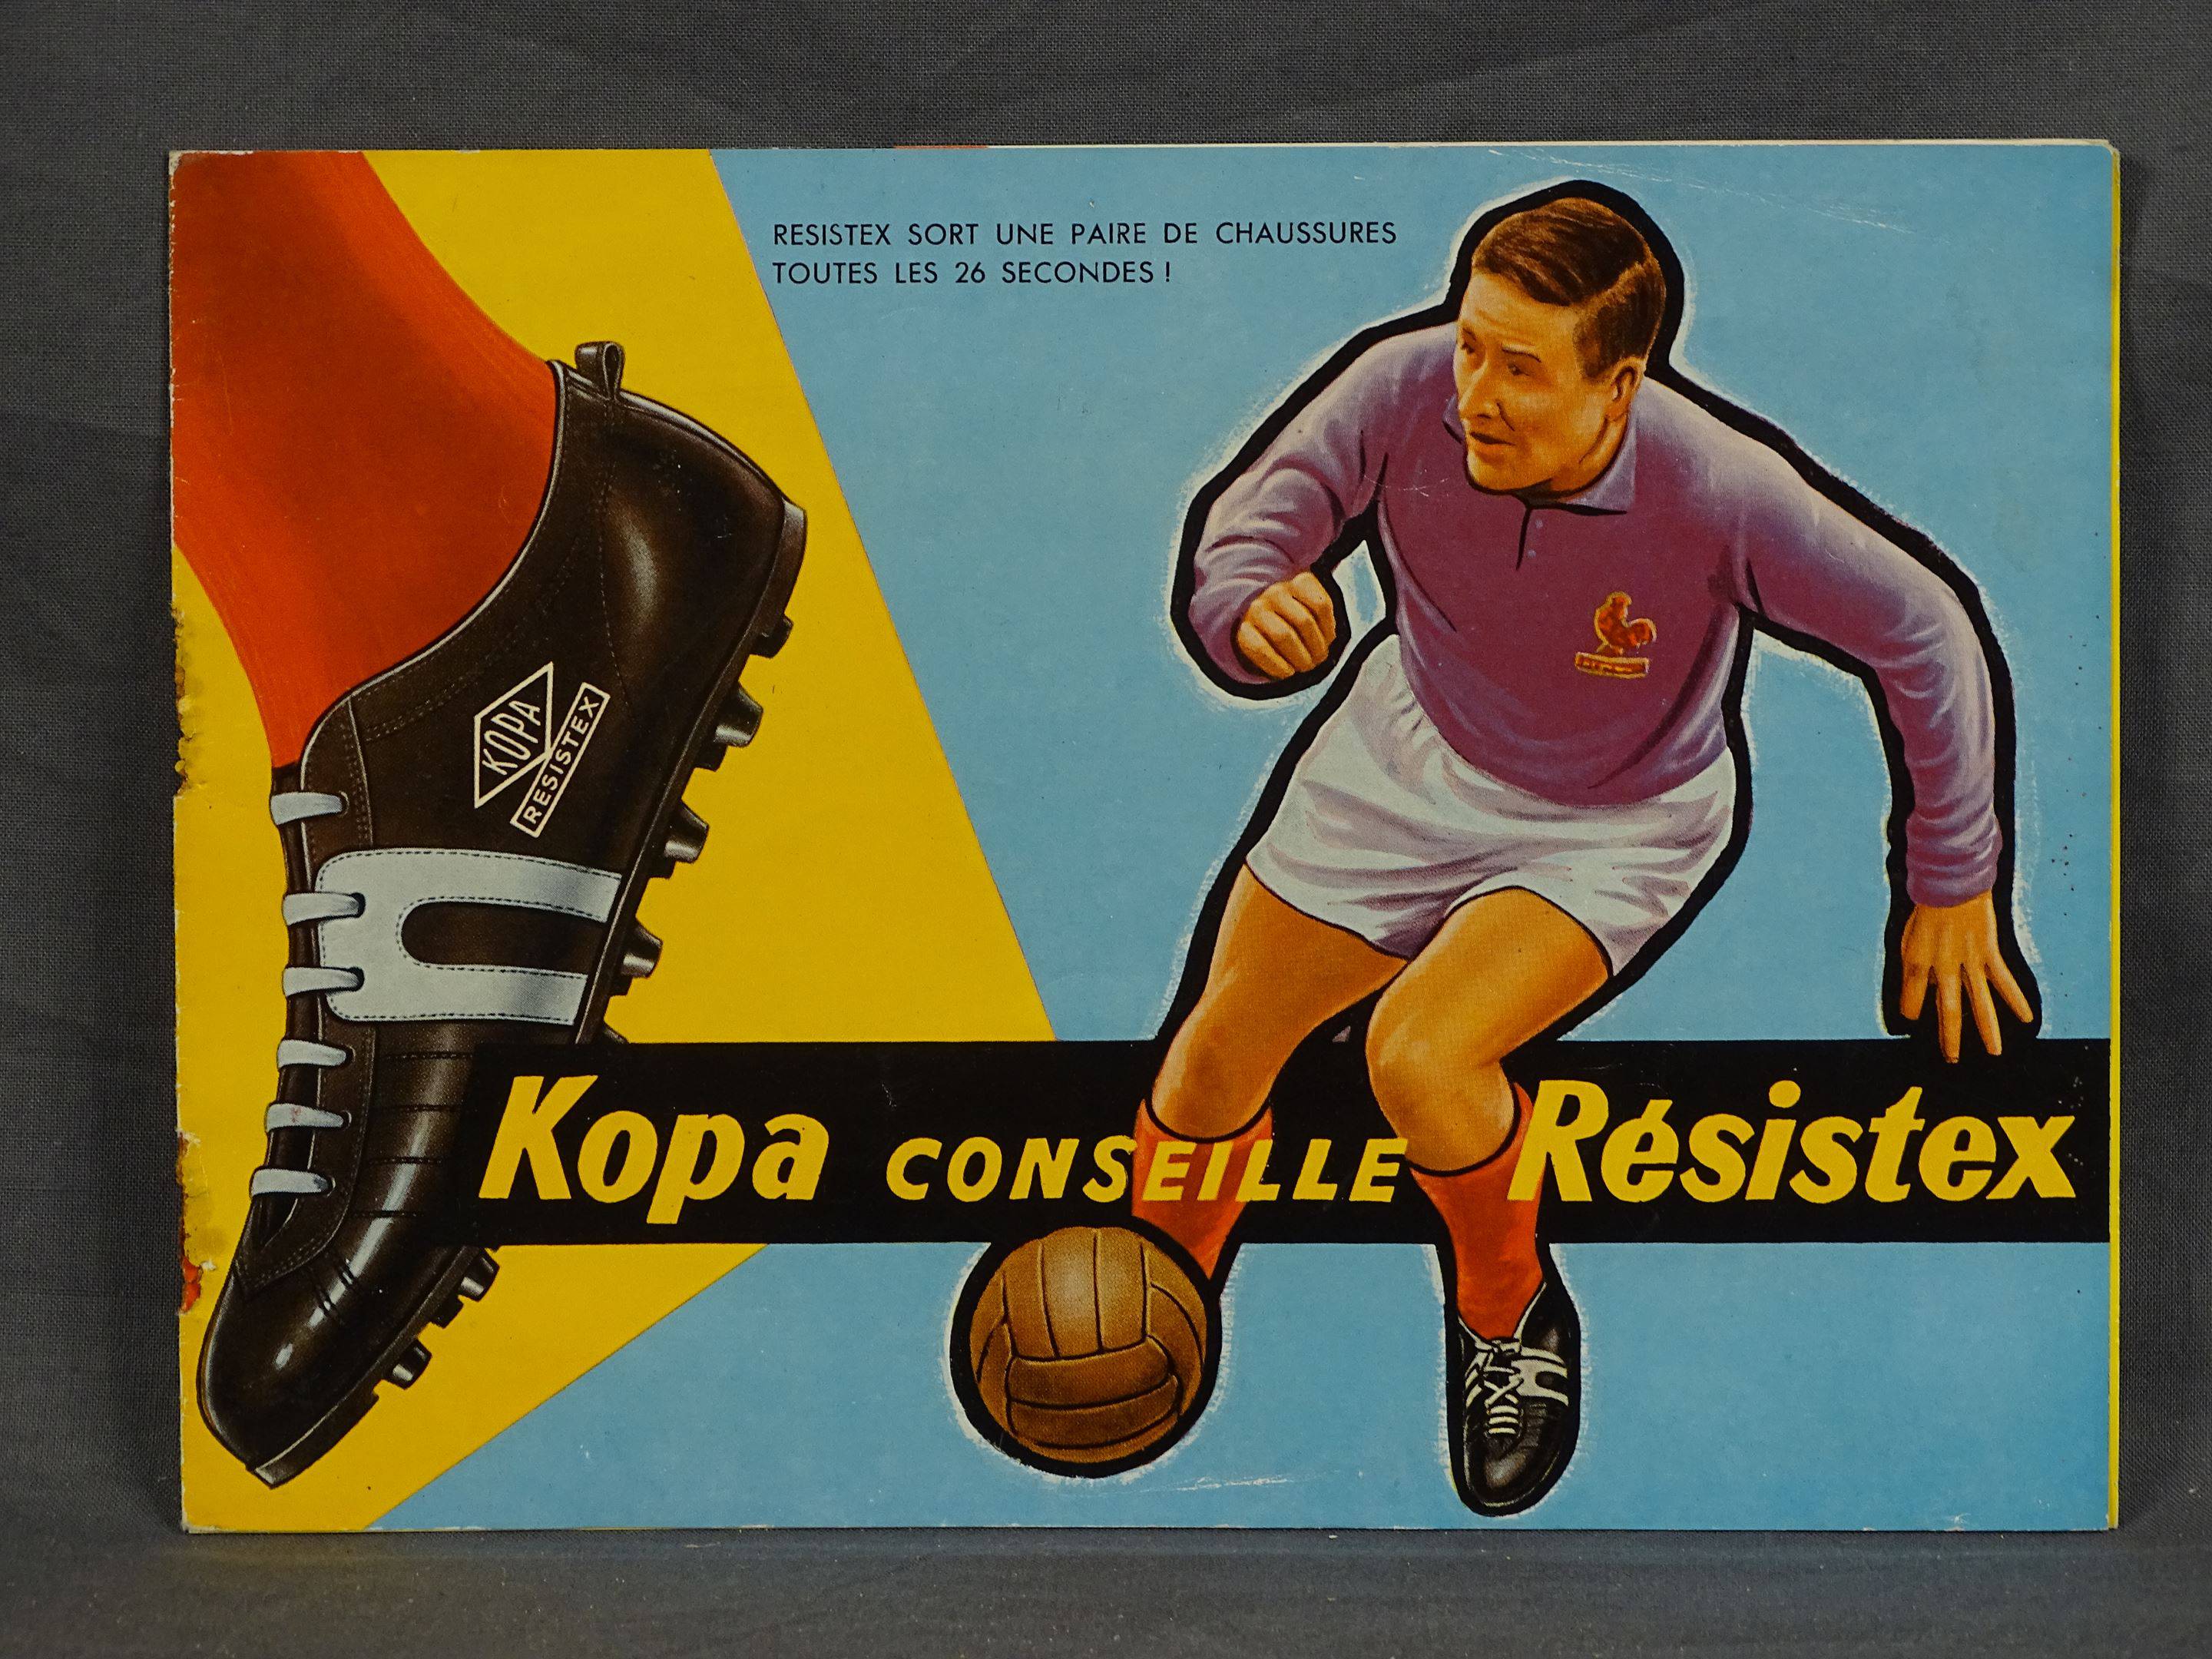 Football -  Kopa conseille Résistex !  - Livret Catalogue illustré  publicitaire ancien - Chaussures, Vente aux enchères : Timbres - Philatélie